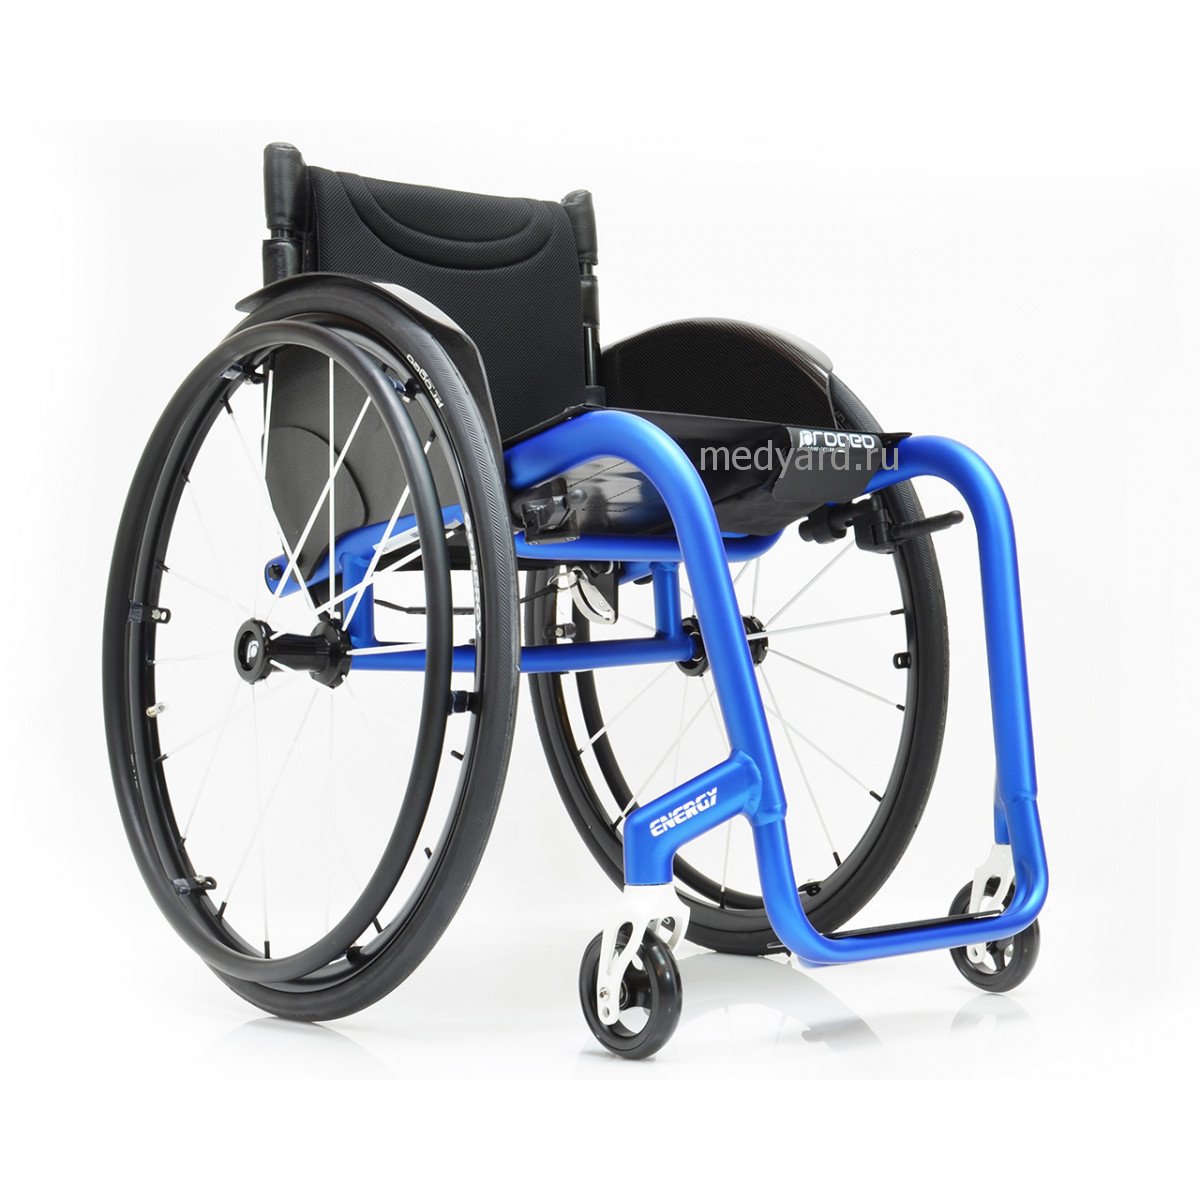 Активная инвалидная коляска купить. Инвалидная коляска Progeo. Итальянская инвалидная коляска Progeo. Коляска Progeo активная. Активная инвалидная коляска Progeo Joker Evolution.